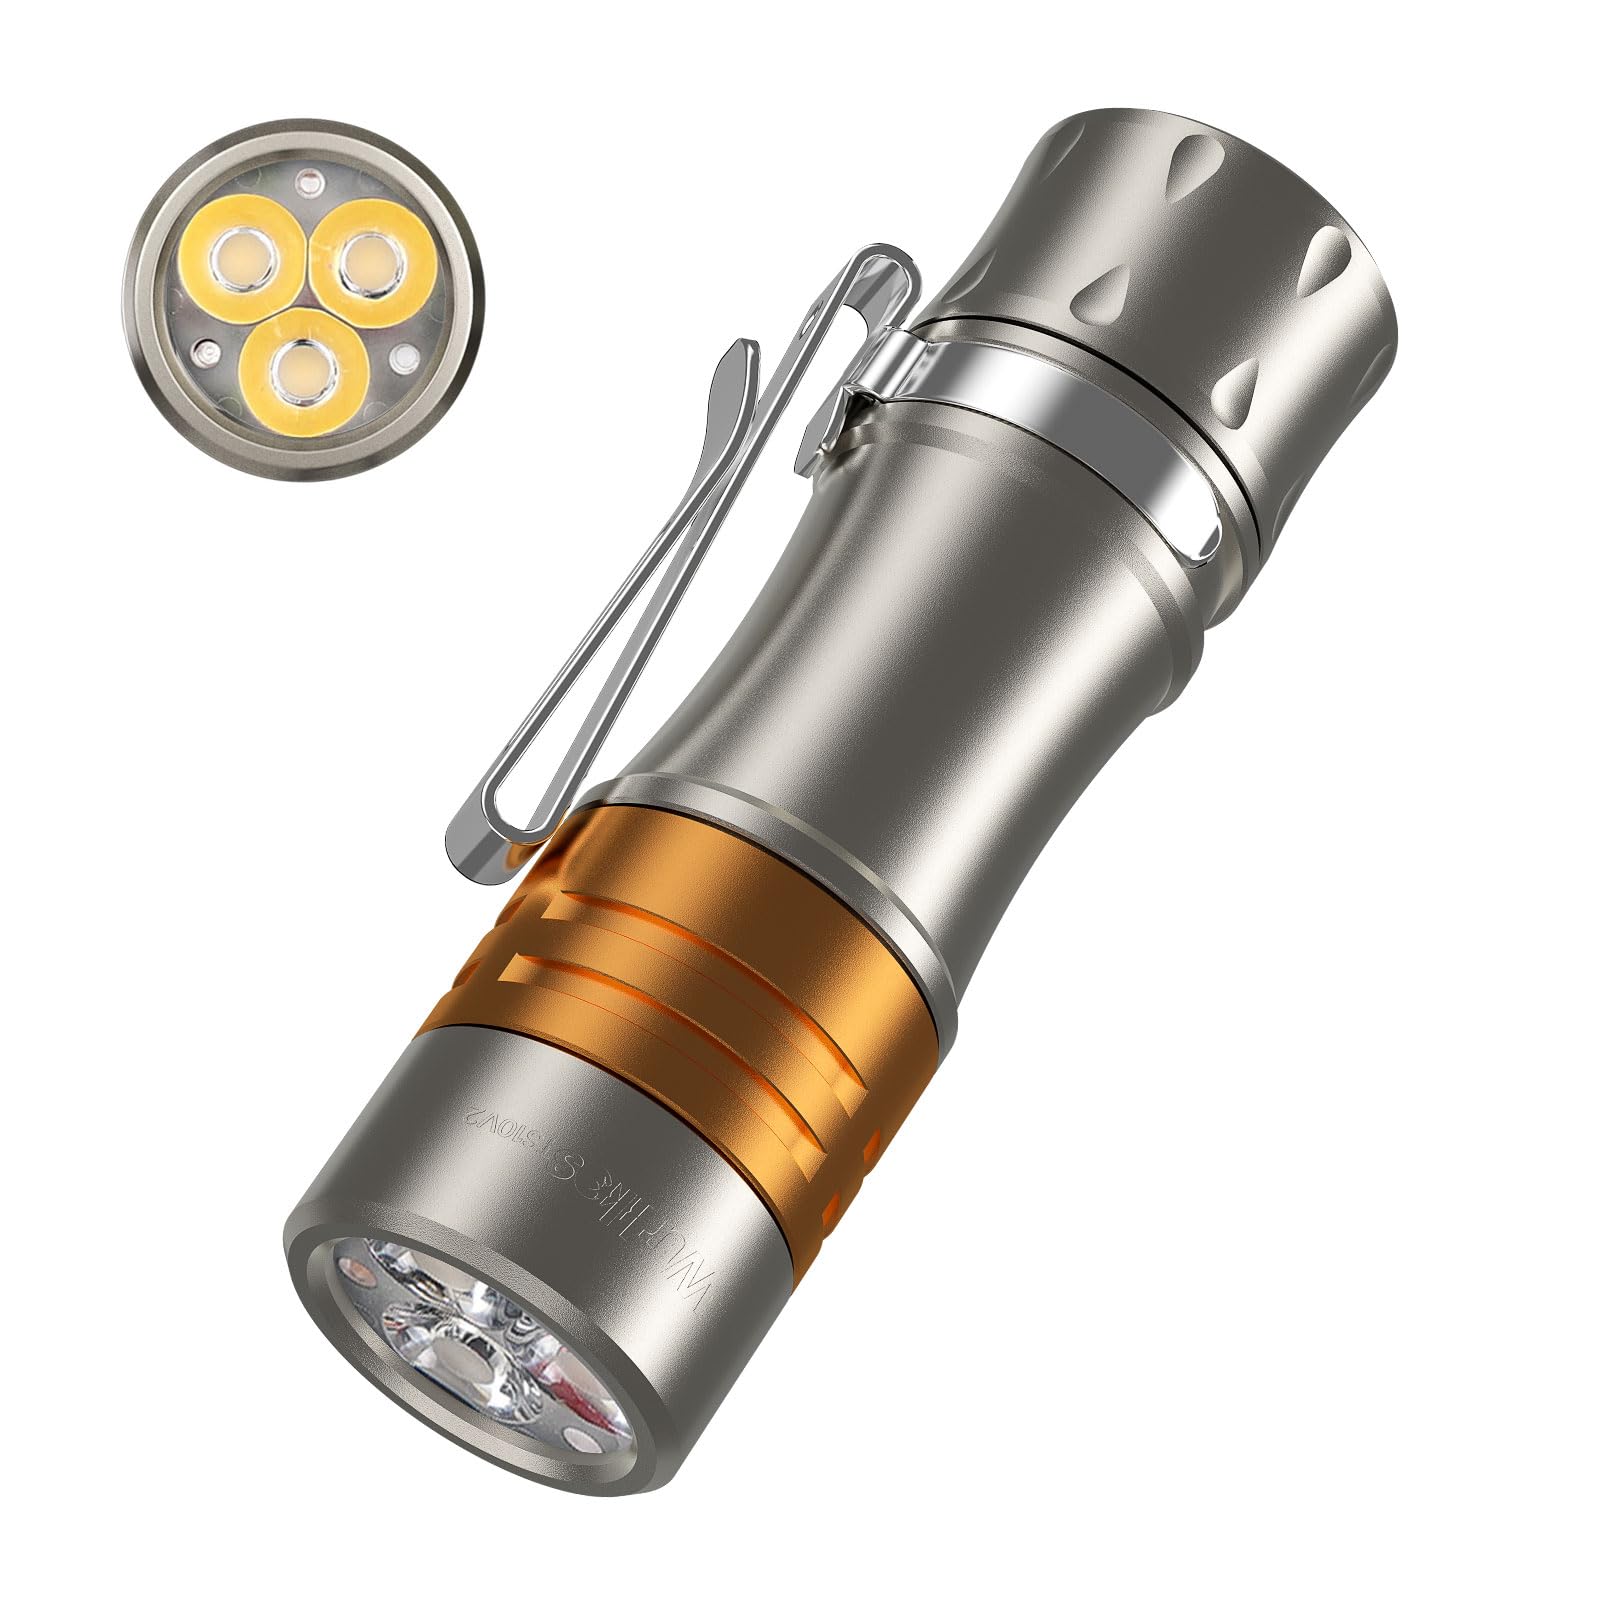 Wurkkos TS10 EDC-Taschenlampe, wiederaufladbar, kleine leistungsstarke Taschenlampe, hohe Lumen, Titanlegierung + Kupfermaterial, 3 LEDs, 1400 l, hell und 3 RGB-AUX-LEDs, Anduril 2.0 UI IP68 (4000 K)